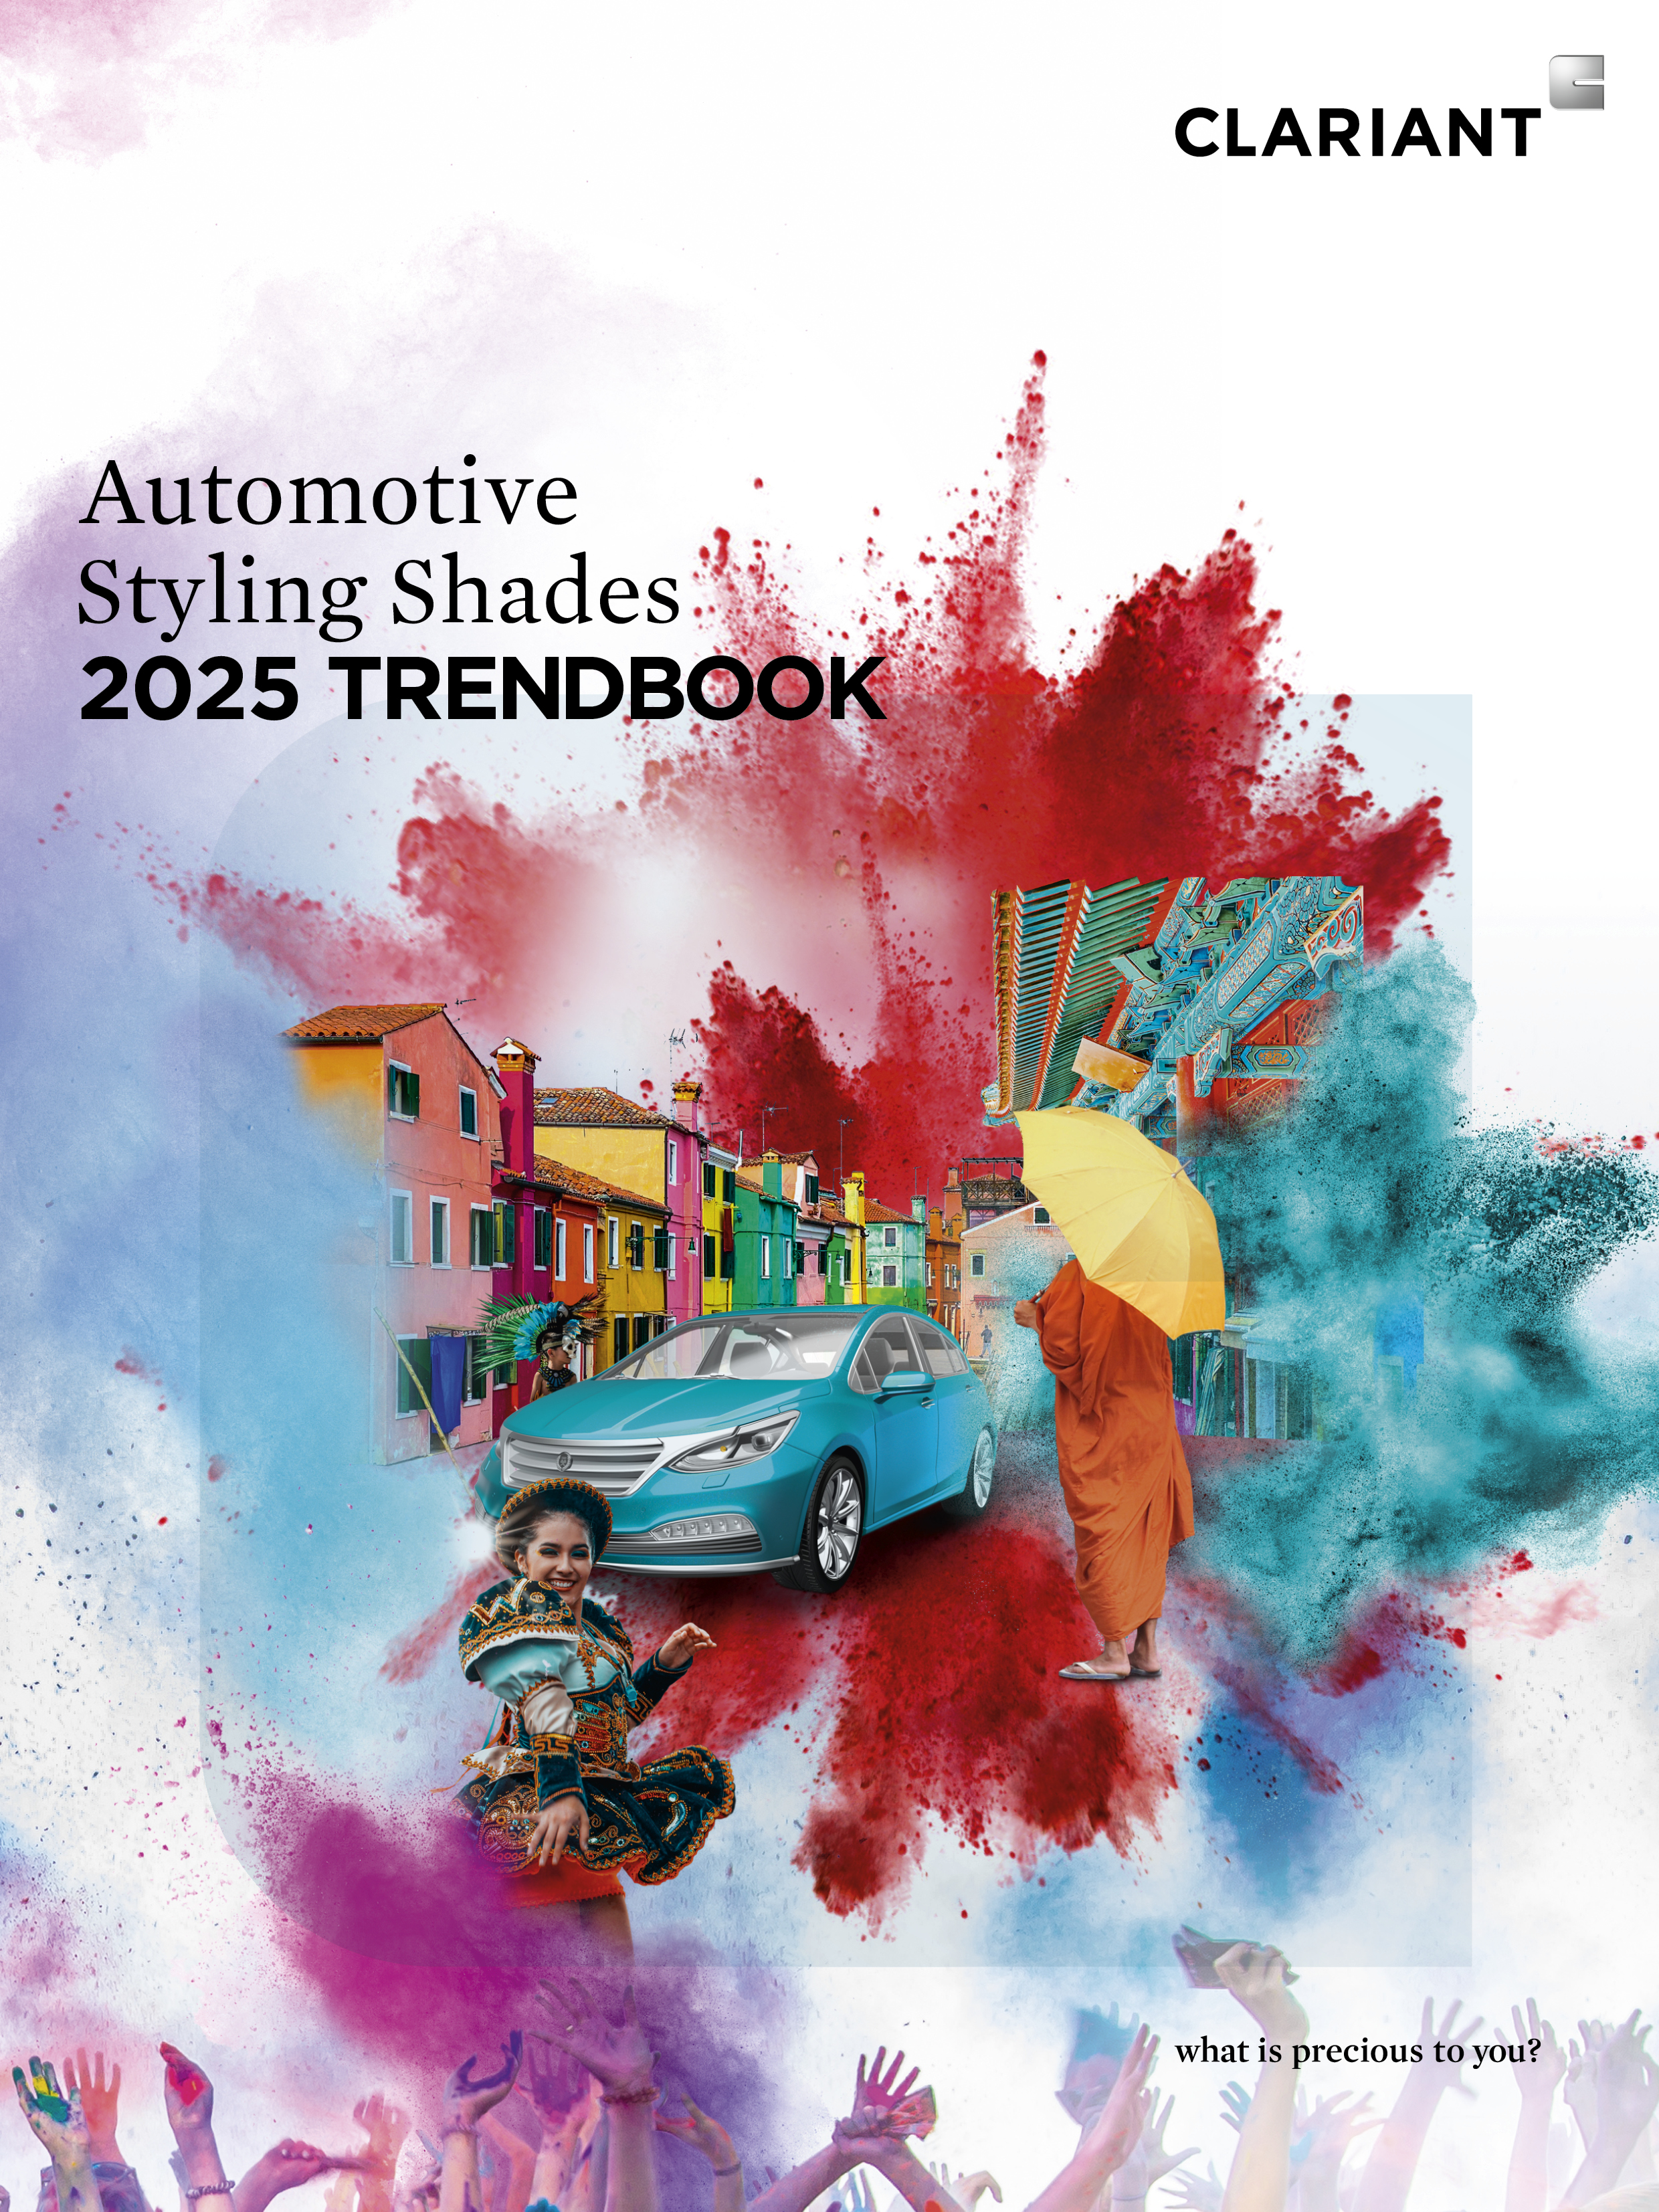 Deckblatt des brandneuen Automotive Styling Shades 2025 Trendbook von Clariant. 
(Foto: Clariant)...